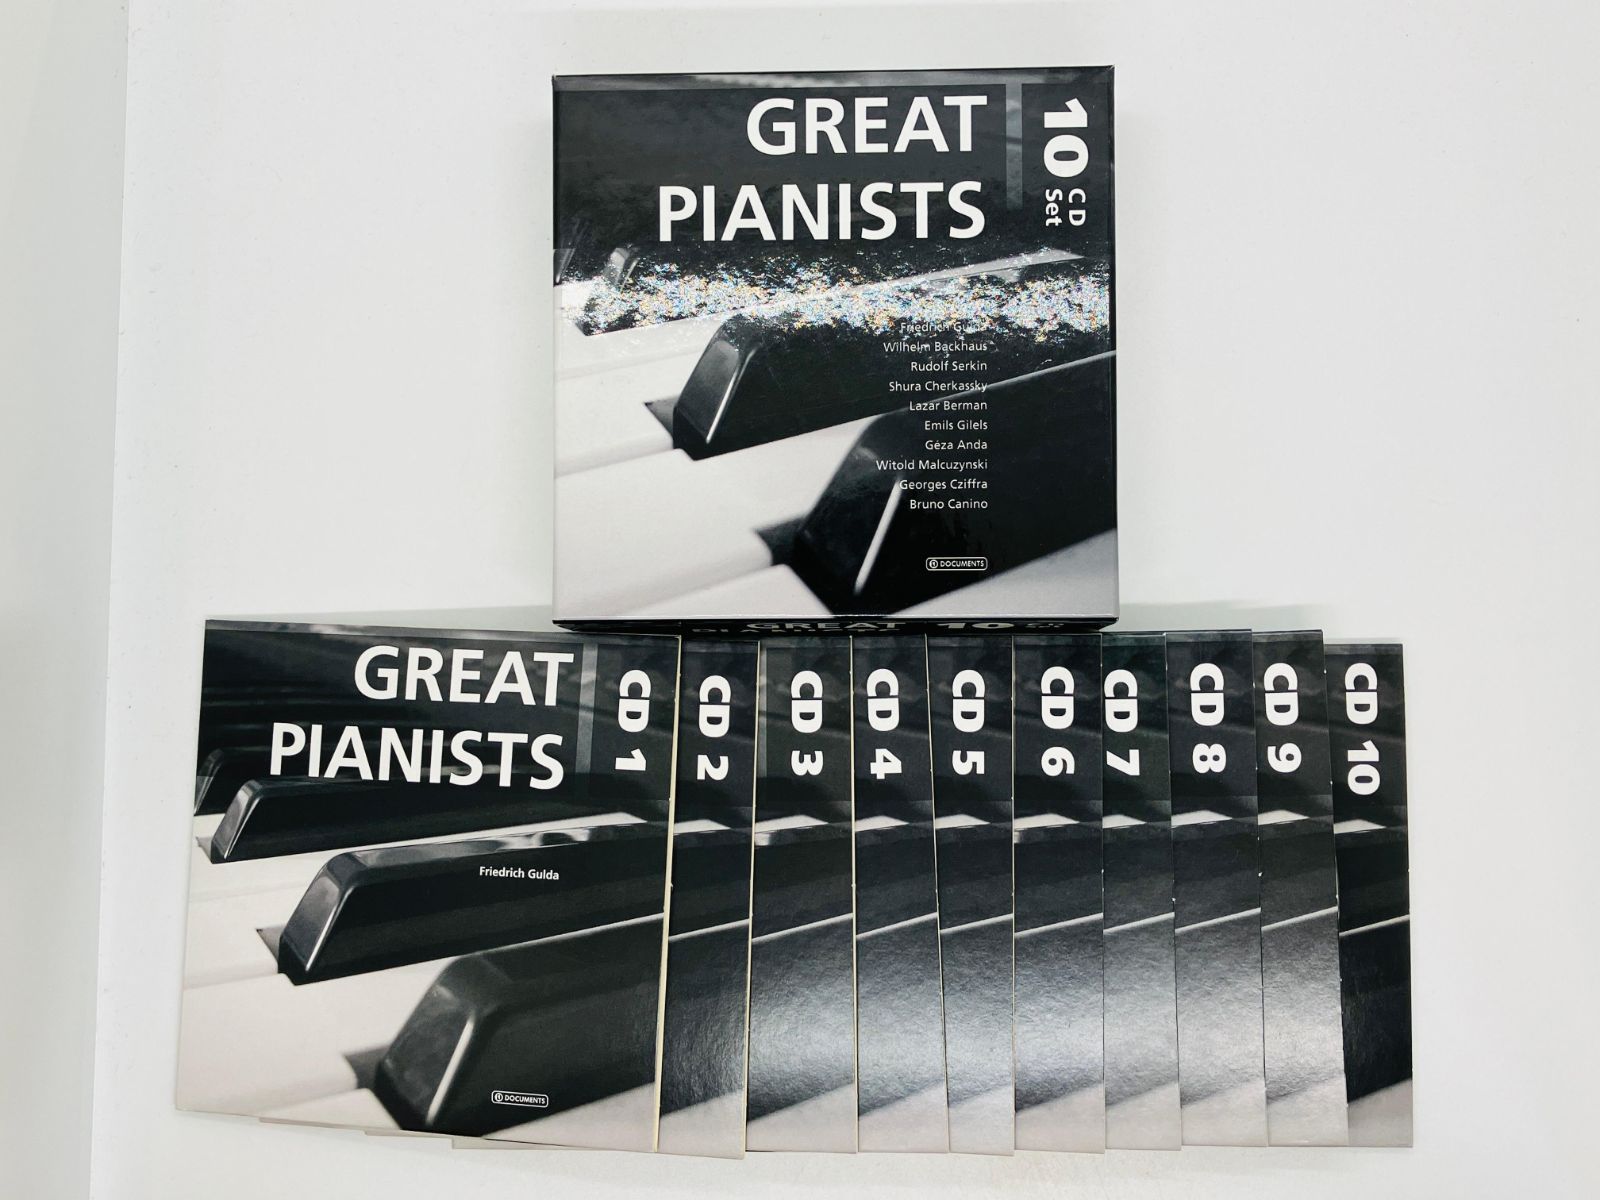 10CD PIANO ピアノ Great Pianists ピアニスト グルダ バックハウス ゼルキン チェルカスキー ベルマン ギレリス アンダ  シフラ Z32 - メルカリ